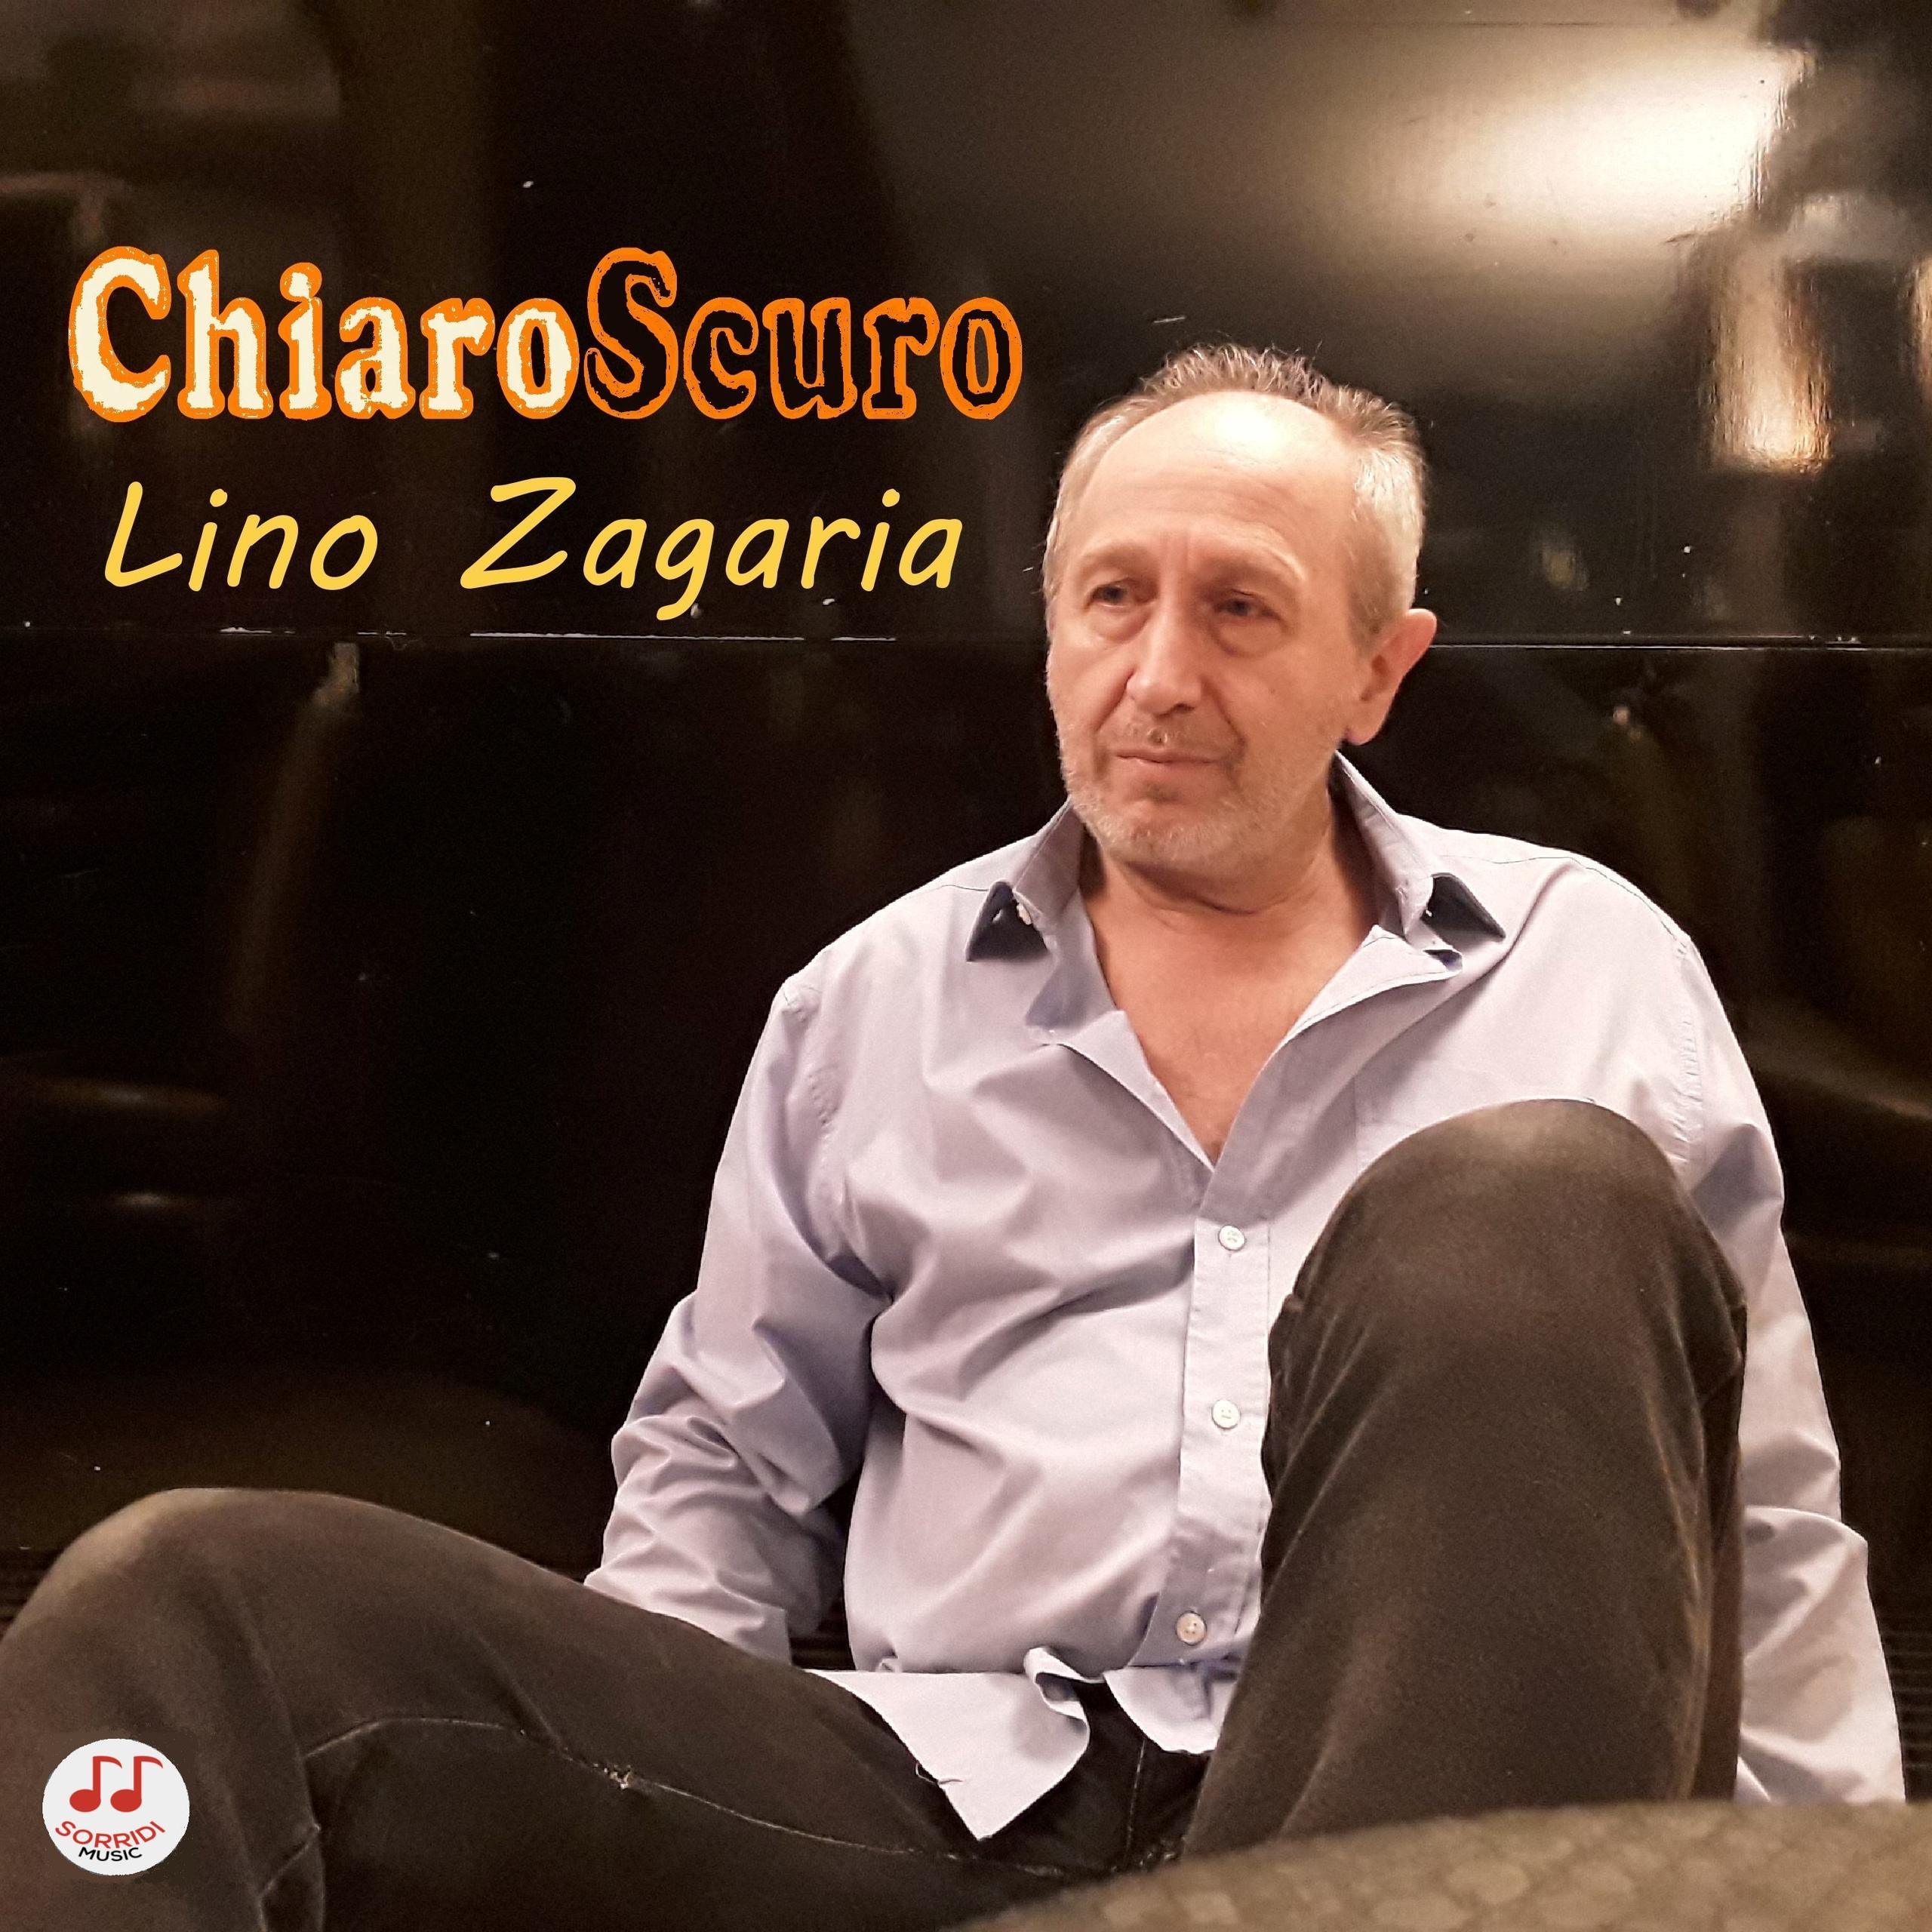 Chiaro Scuro - Lino Zagaria